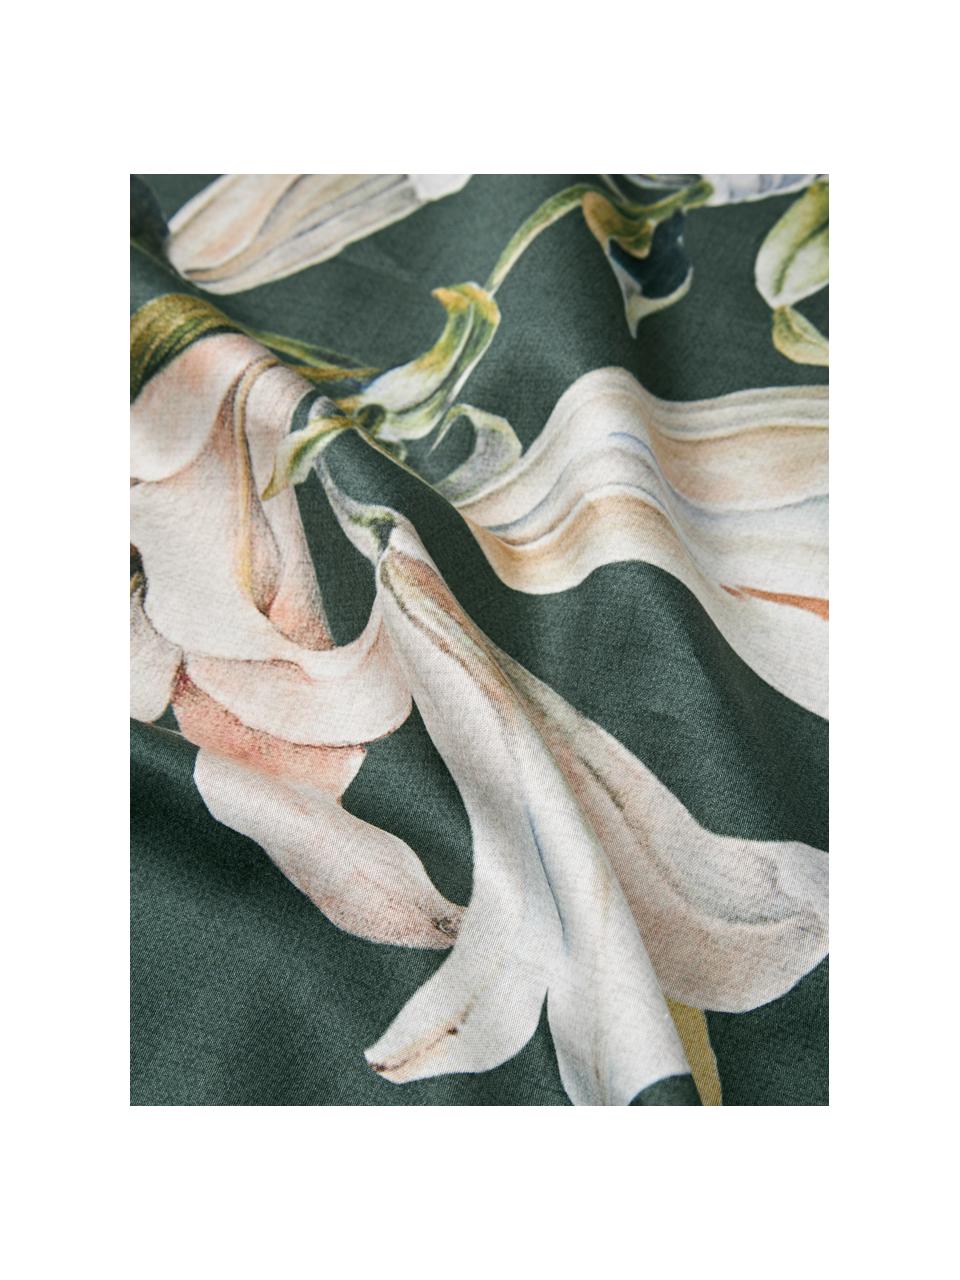 Copripiumino in raso di cotone con stampa floreale Flori, Tessuto: raso Densità dei fili 210, Verde scuro, multicolore, Larg. 200 x Lung. 200 cm